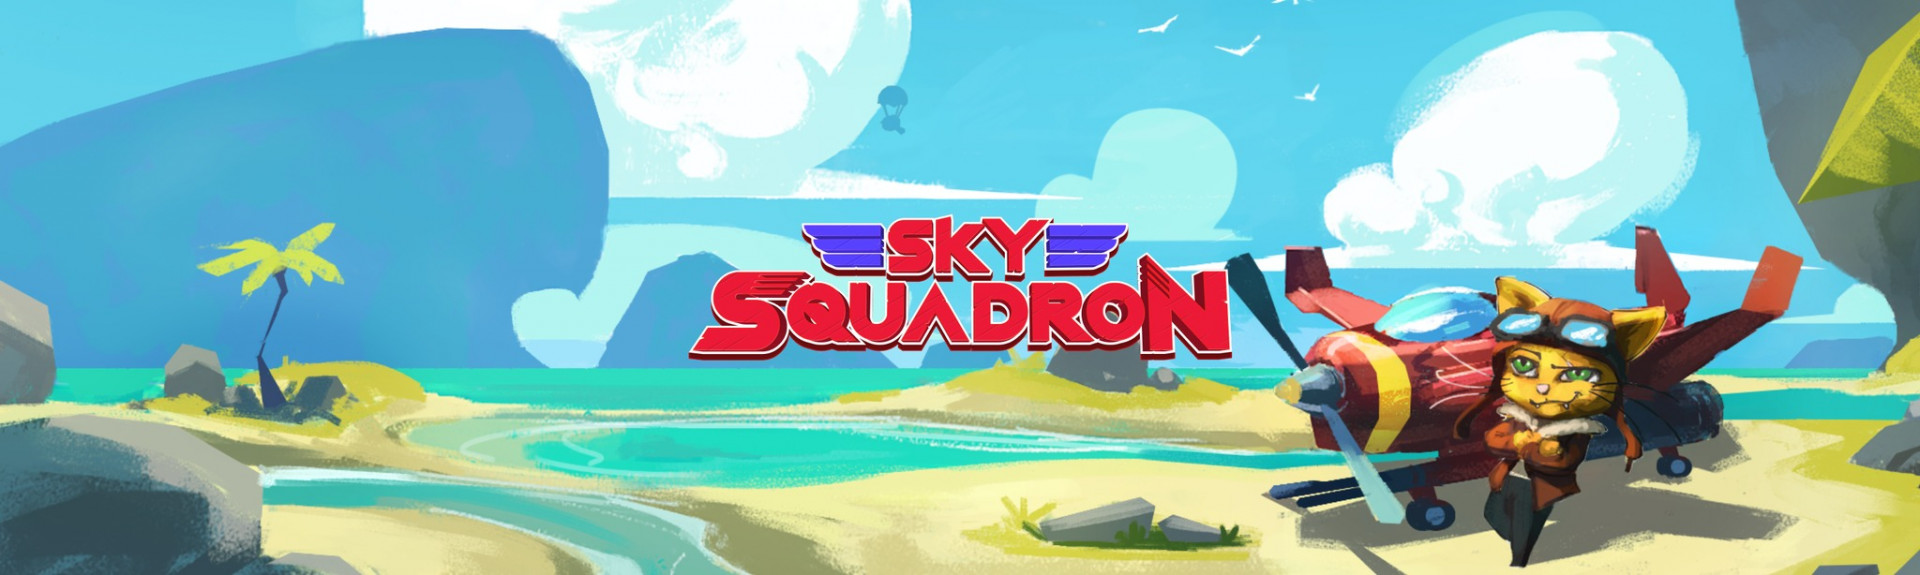 Sky Squadron Beta